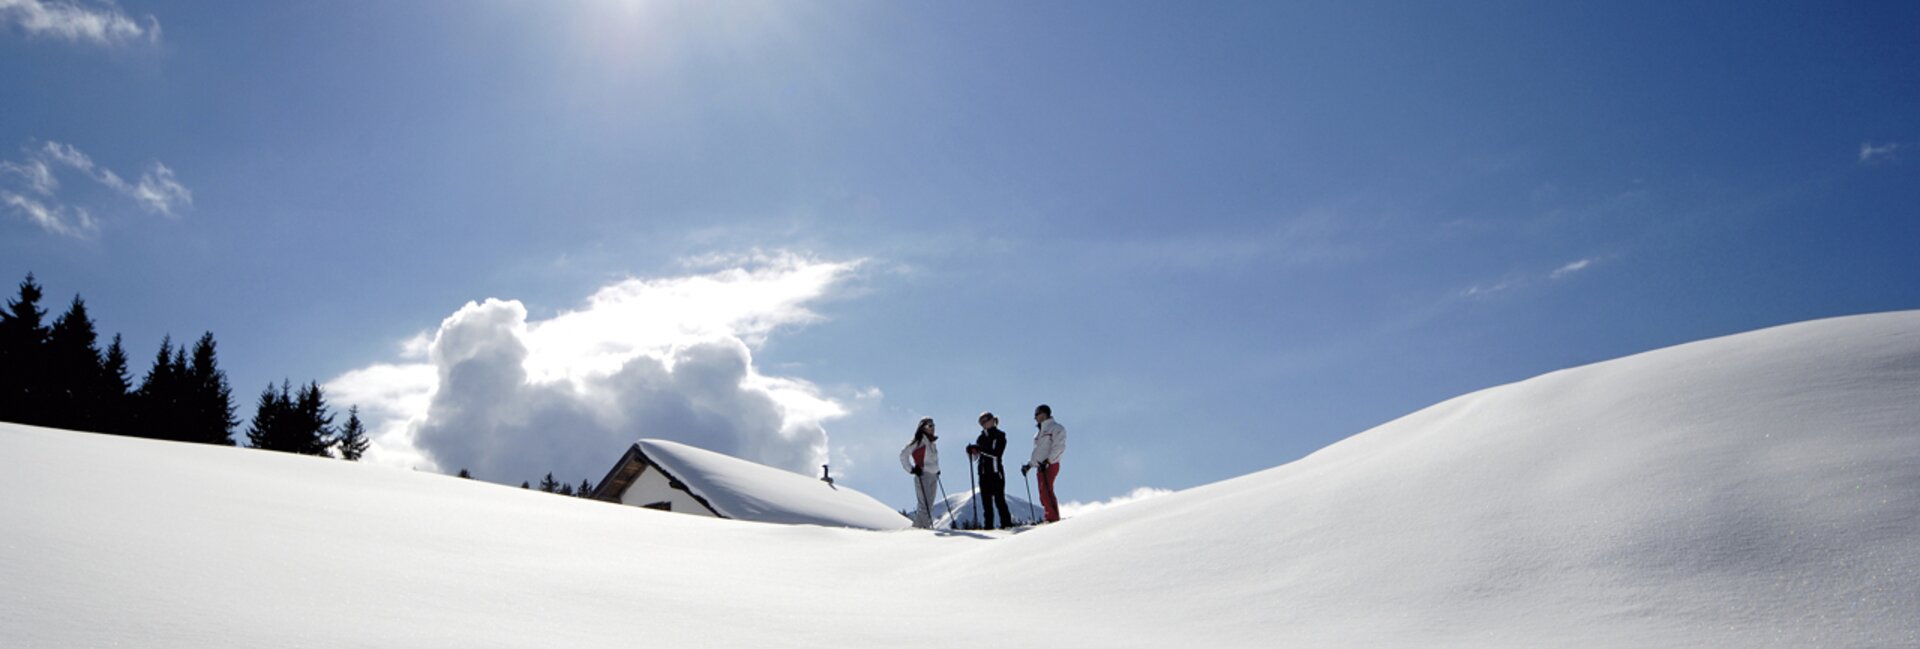 Sanfter Winter in den Dolomiten: Winterwandern, Schneeschuhwandern